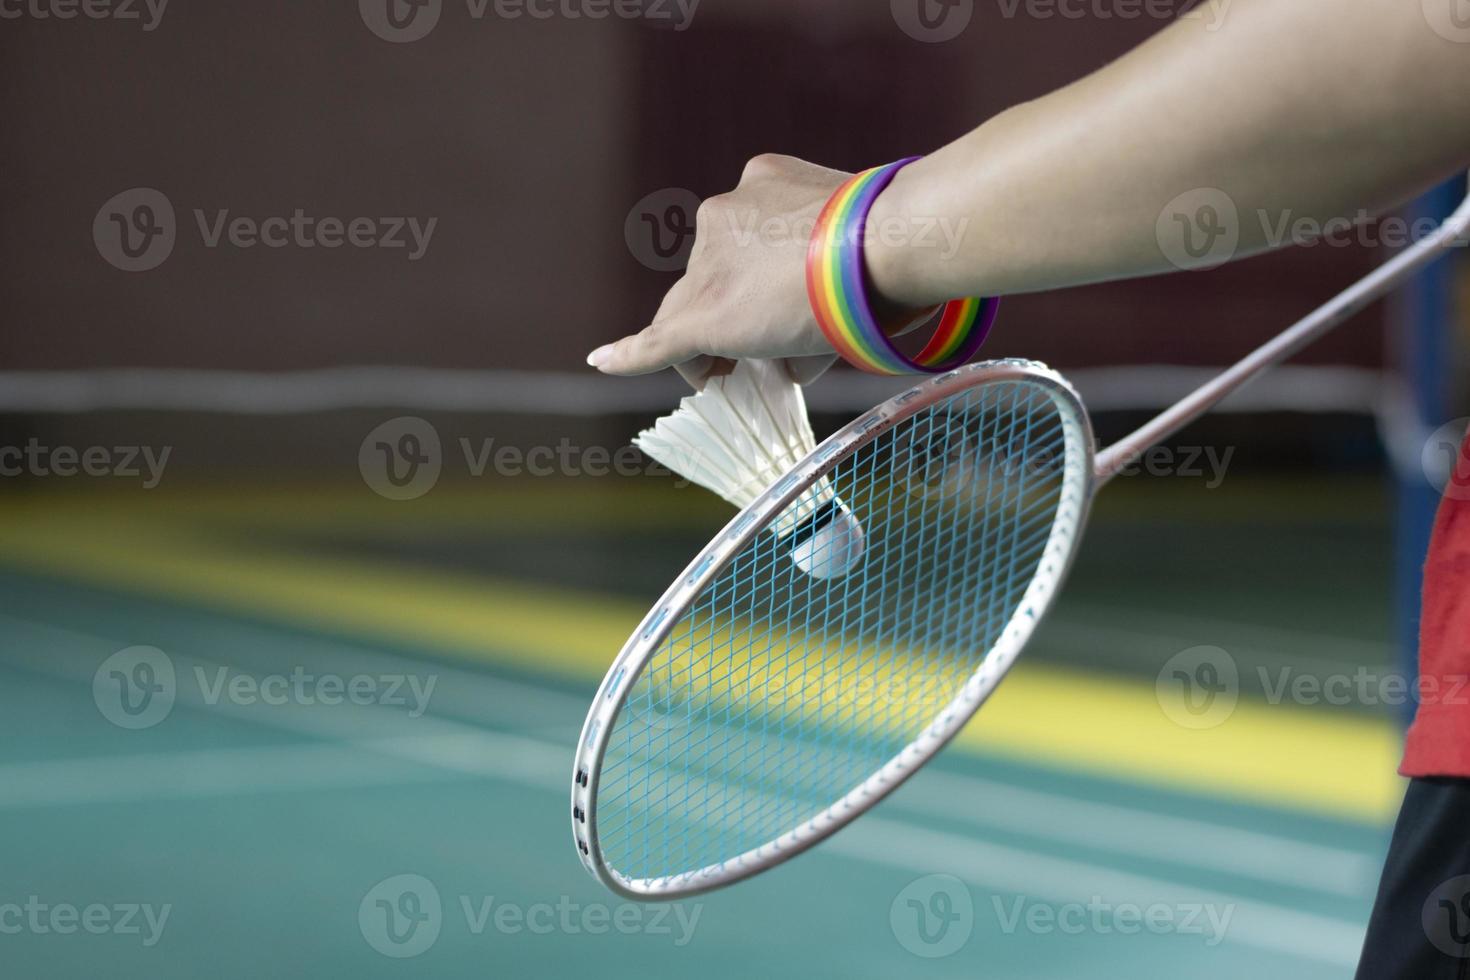 badminton speler draagt regenboog polsbandjes en Holding racket en wit shuttle in voorkant van de netto voordat portie het naar speler in een ander kant van de rechtbank, concept voor lgbt mensen activiteiten. foto